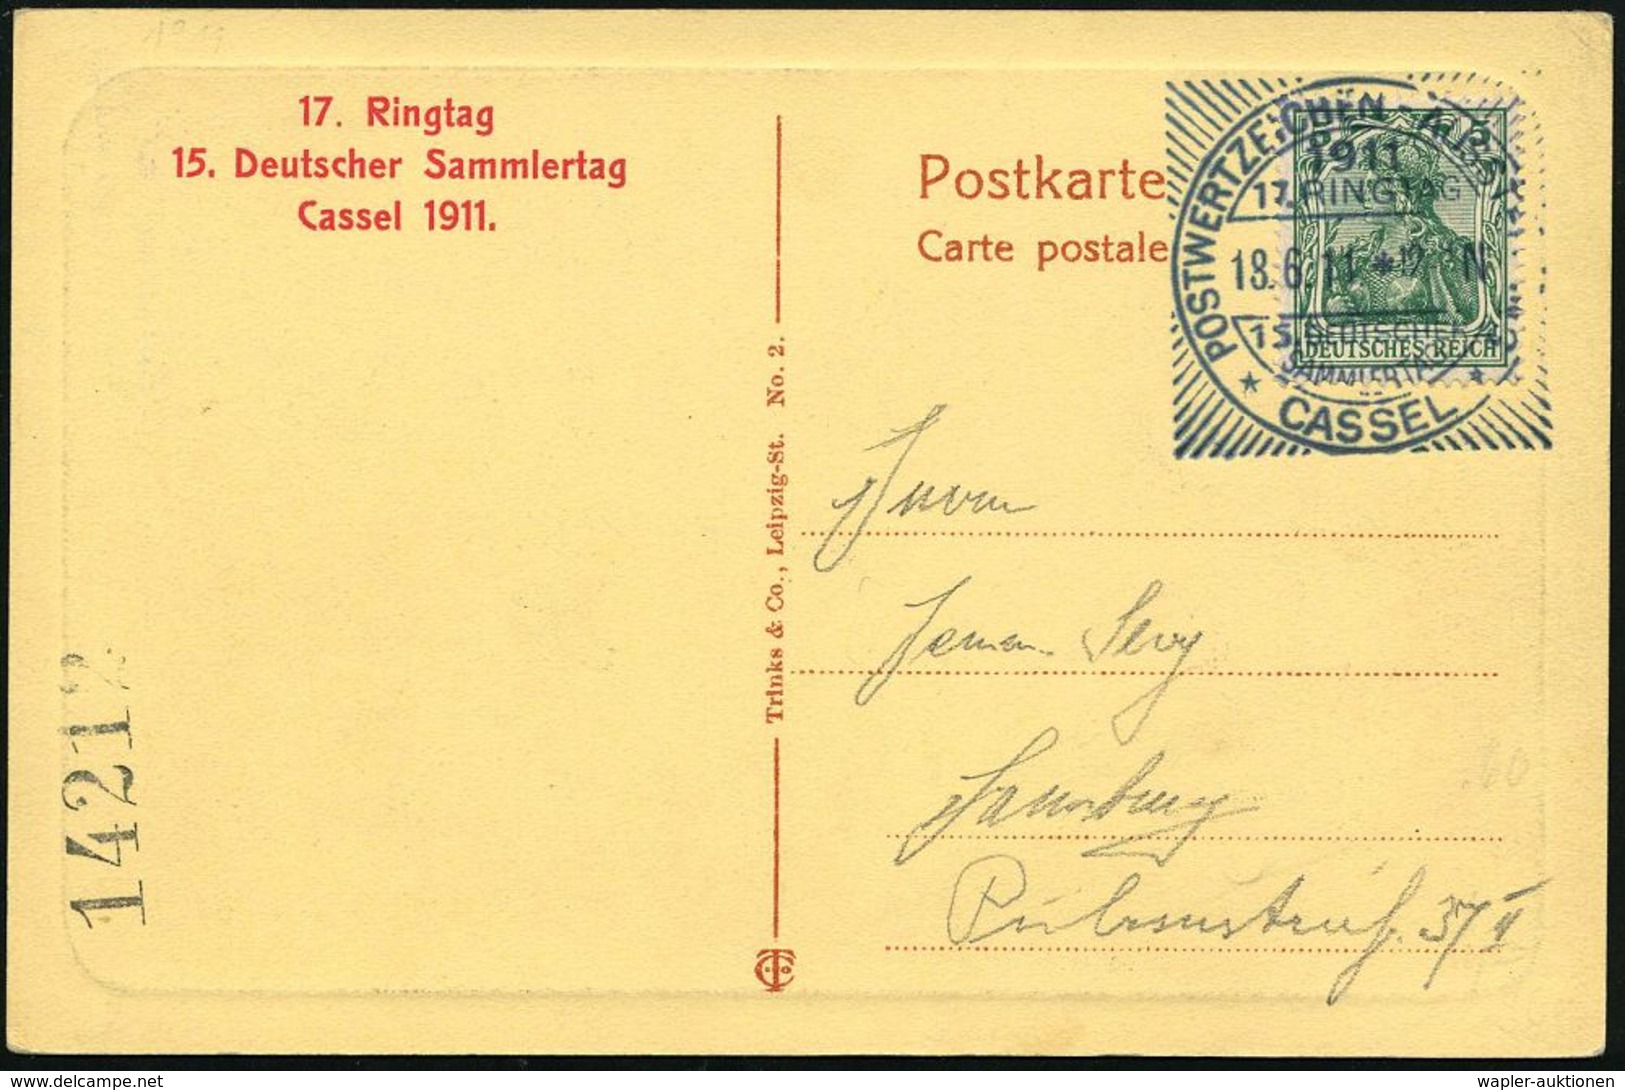 Kassel 1911 (18.6.) SSt: CASSEL/POSTWERTZEICHEN-AUSSTELLUNG/17.RINGTAG/15.DEUTSCHER/SAMMLERTAG (Sonderform Mit Strahlenk - Expositions Philatéliques